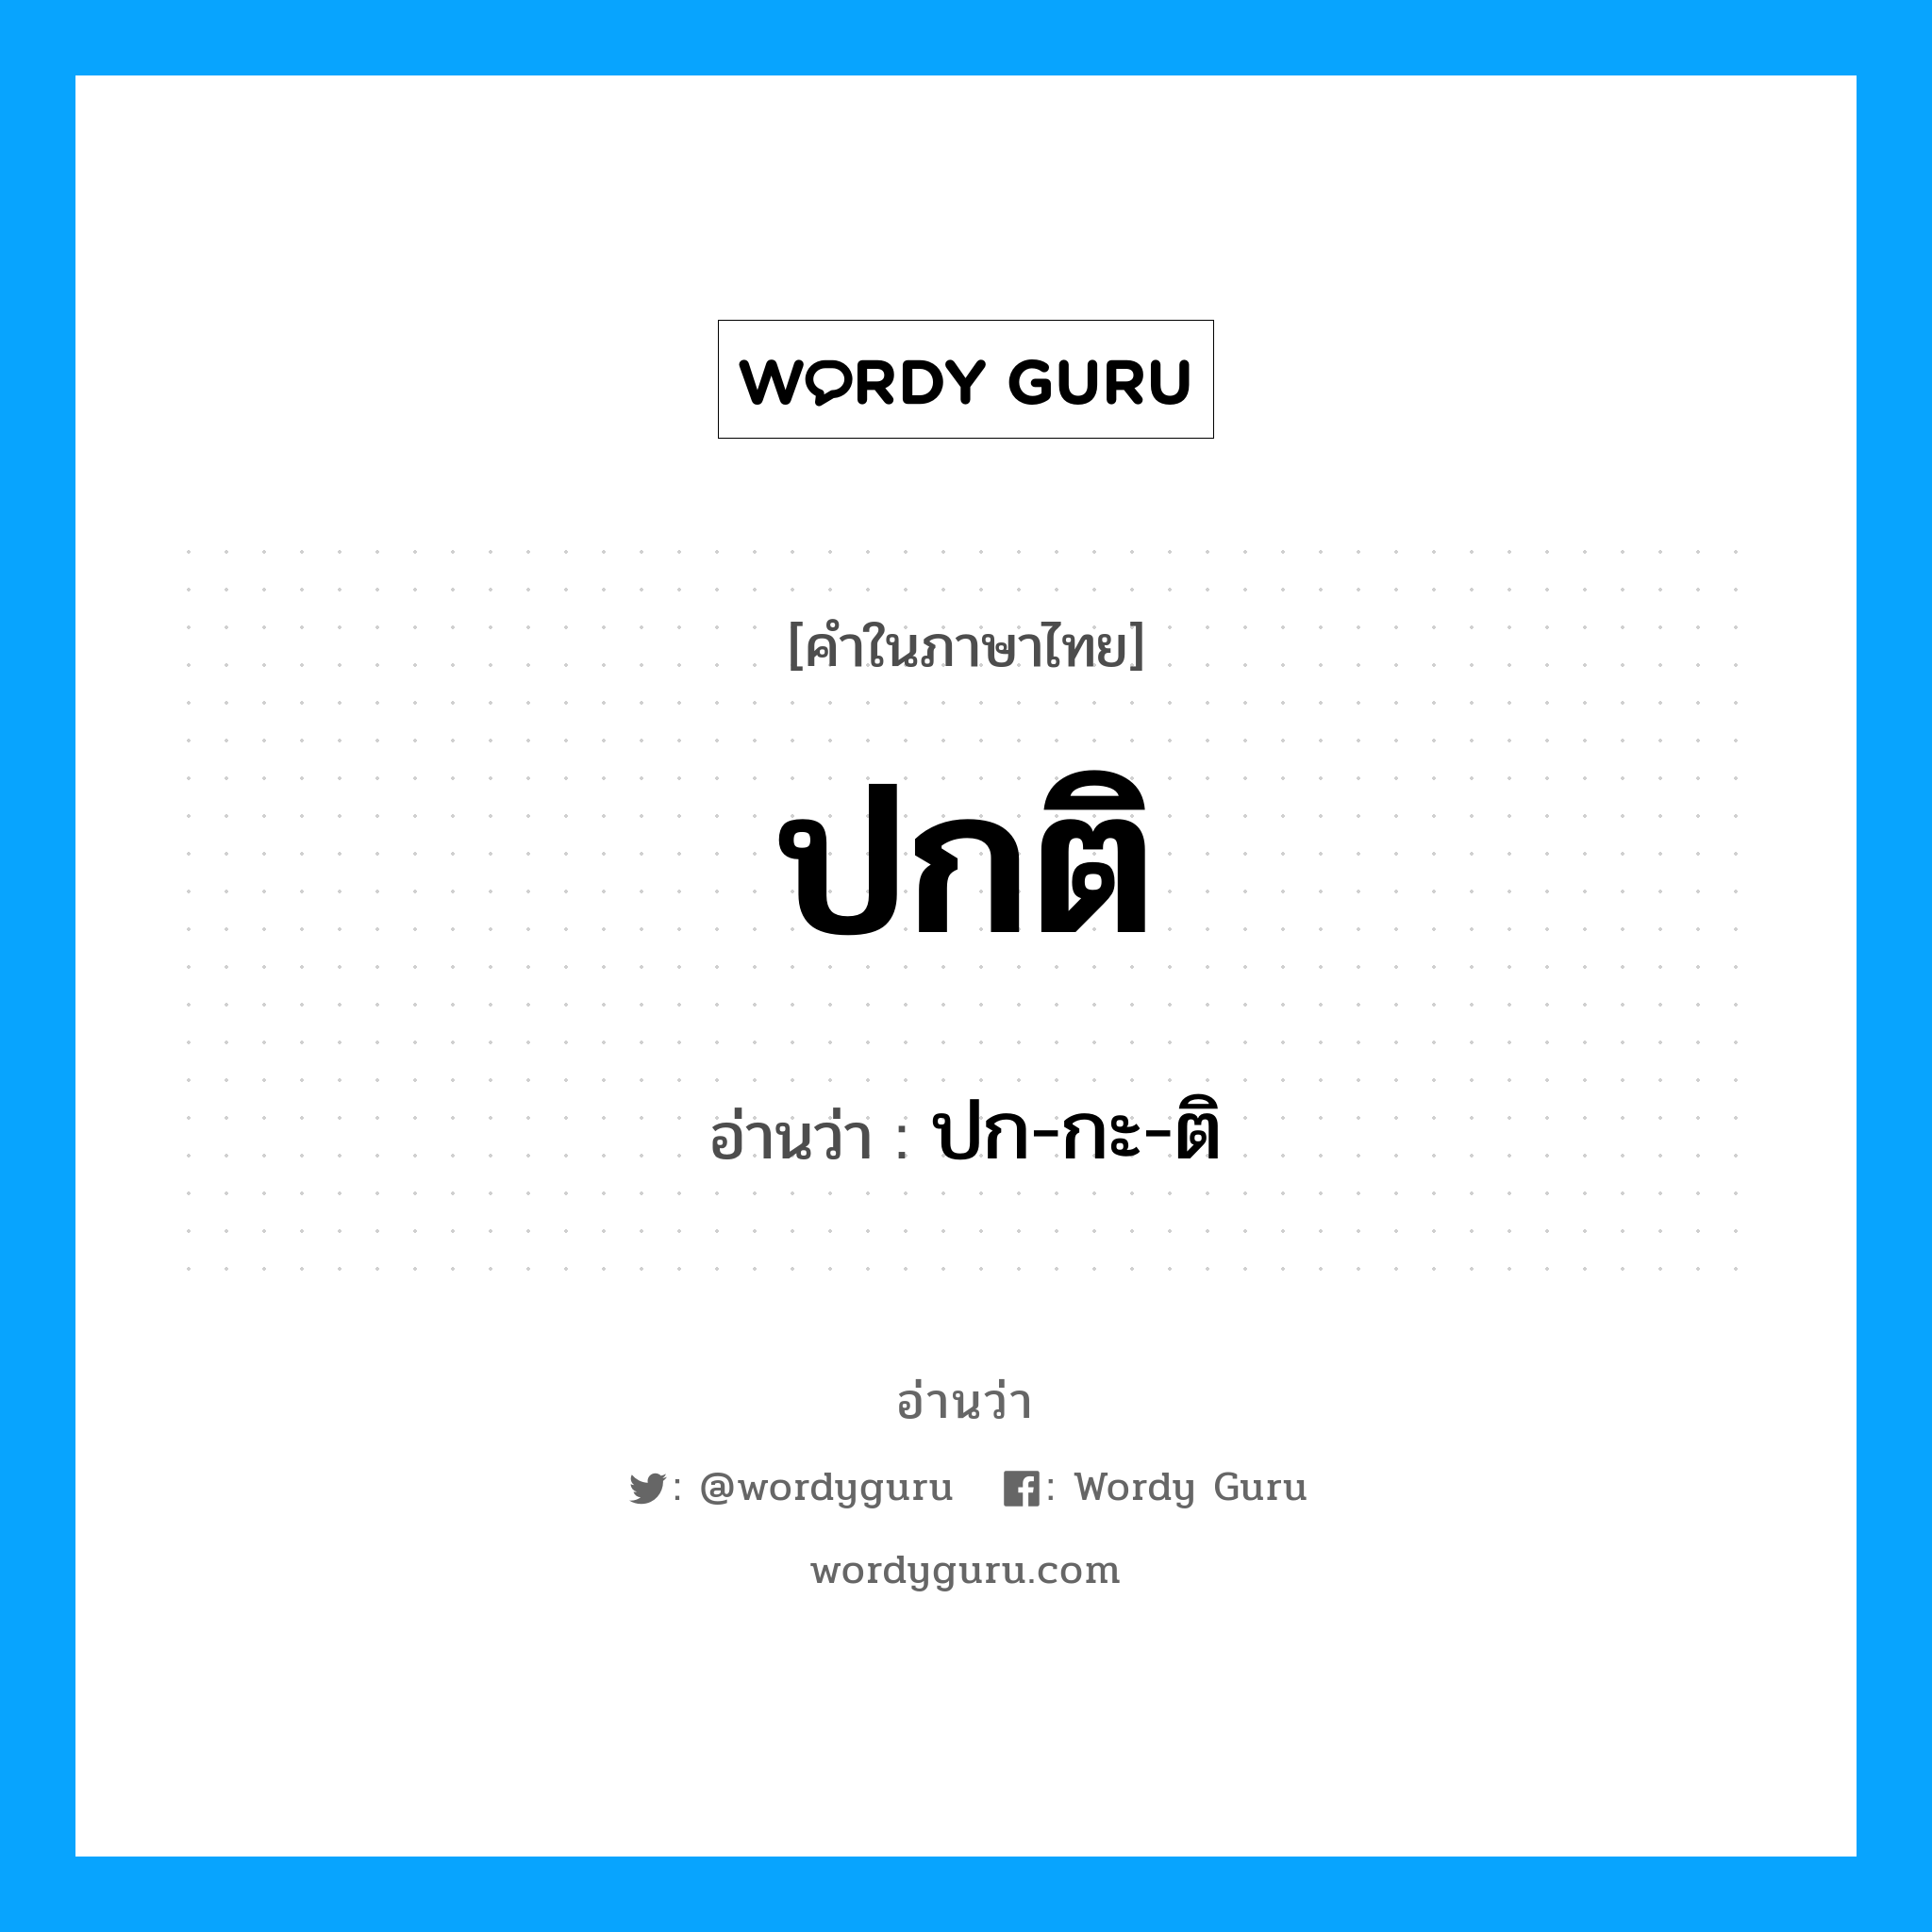 ปก-กะ-ติ เป็นคำอ่านของคำไหน?, คำในภาษาไทย ปก-กะ-ติ อ่านว่า ปกติ